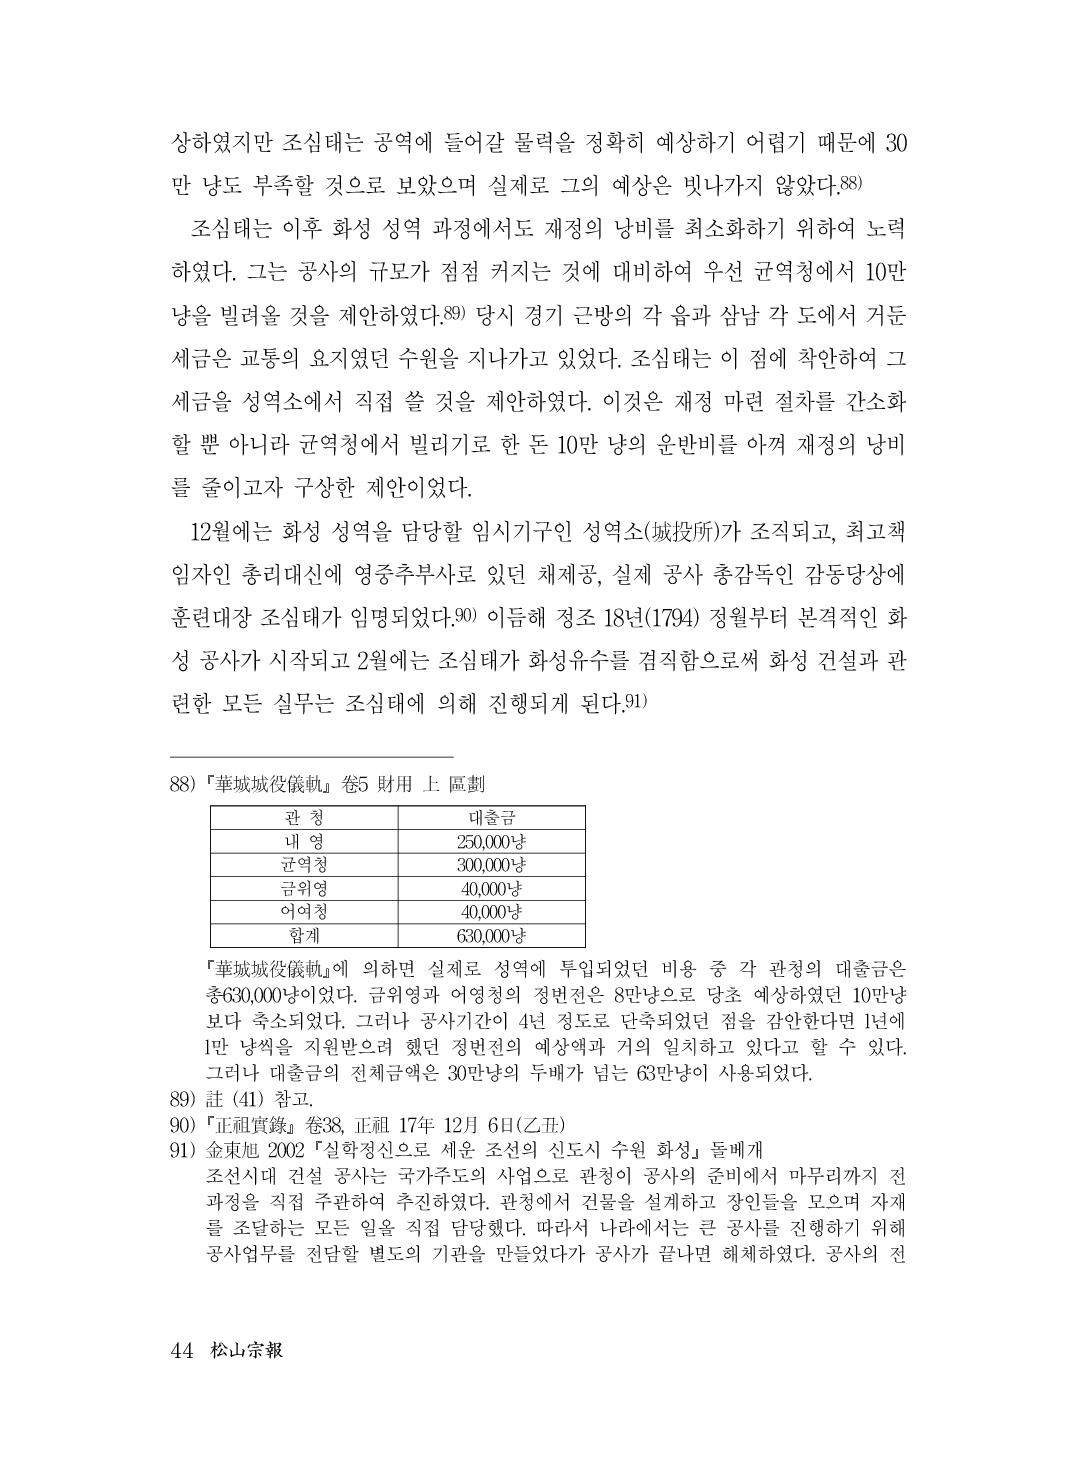 (전체) 송산종보(27호)(최종)_45.jpg